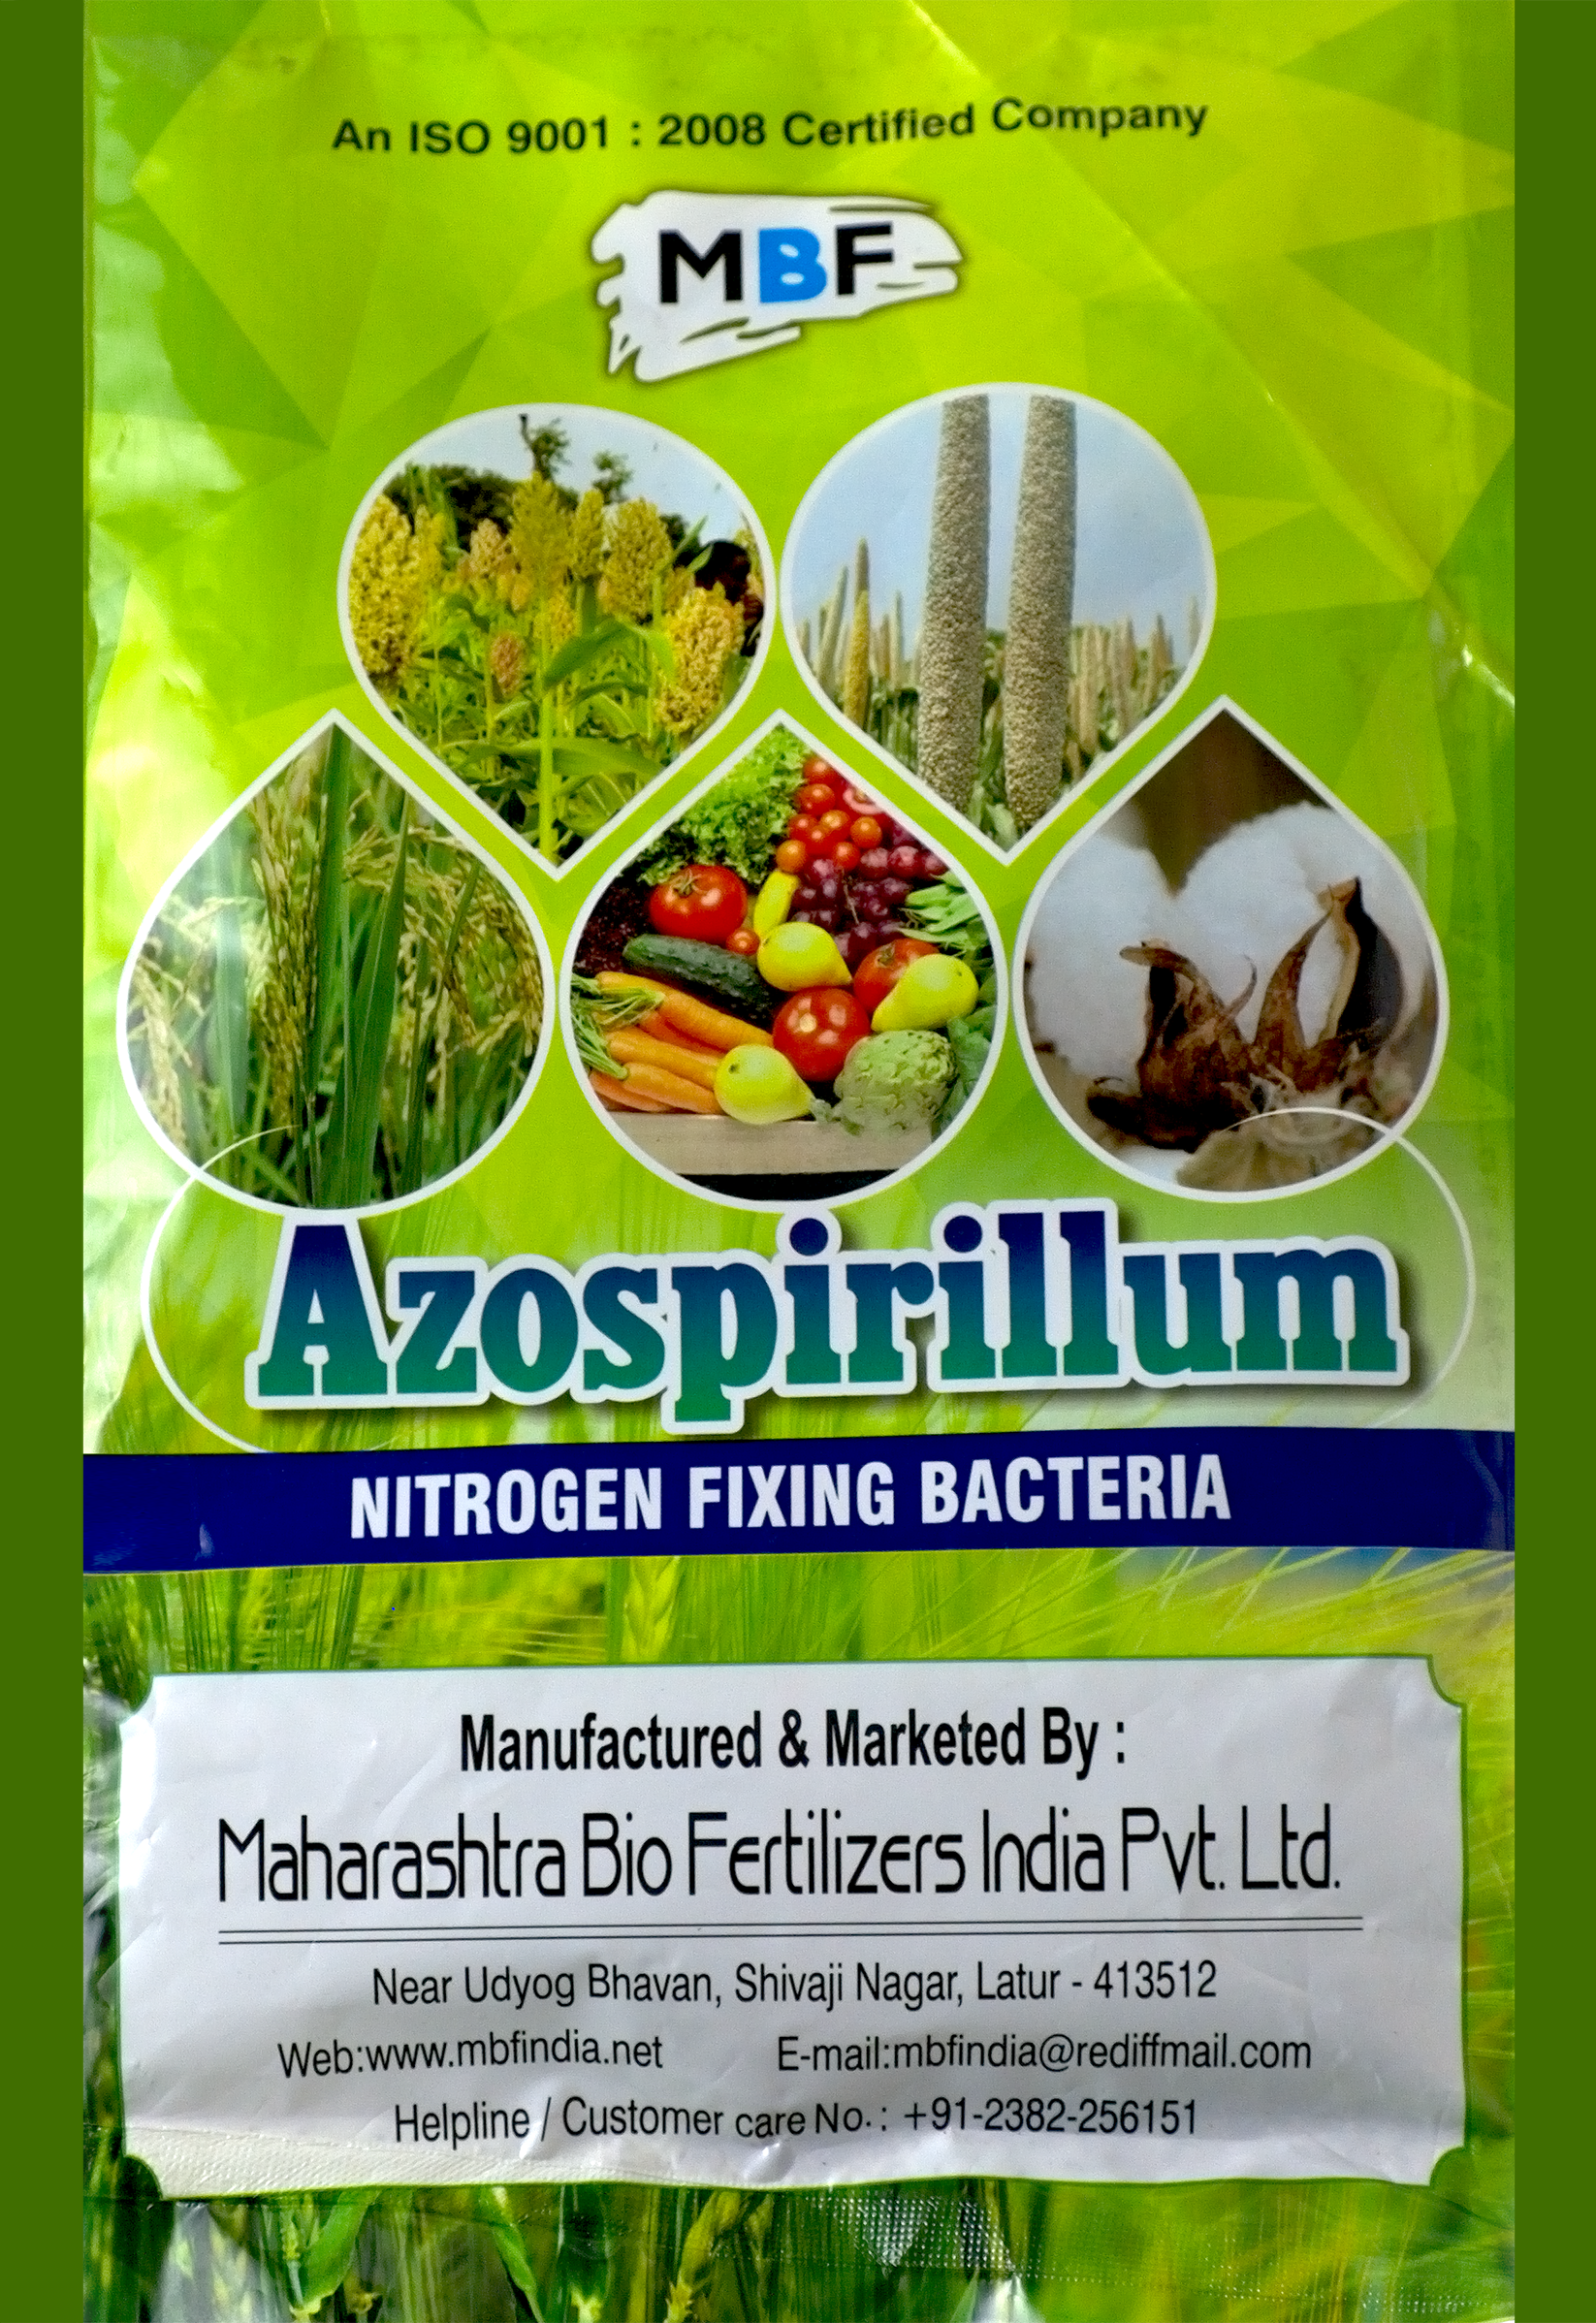 MBF Azospirillium